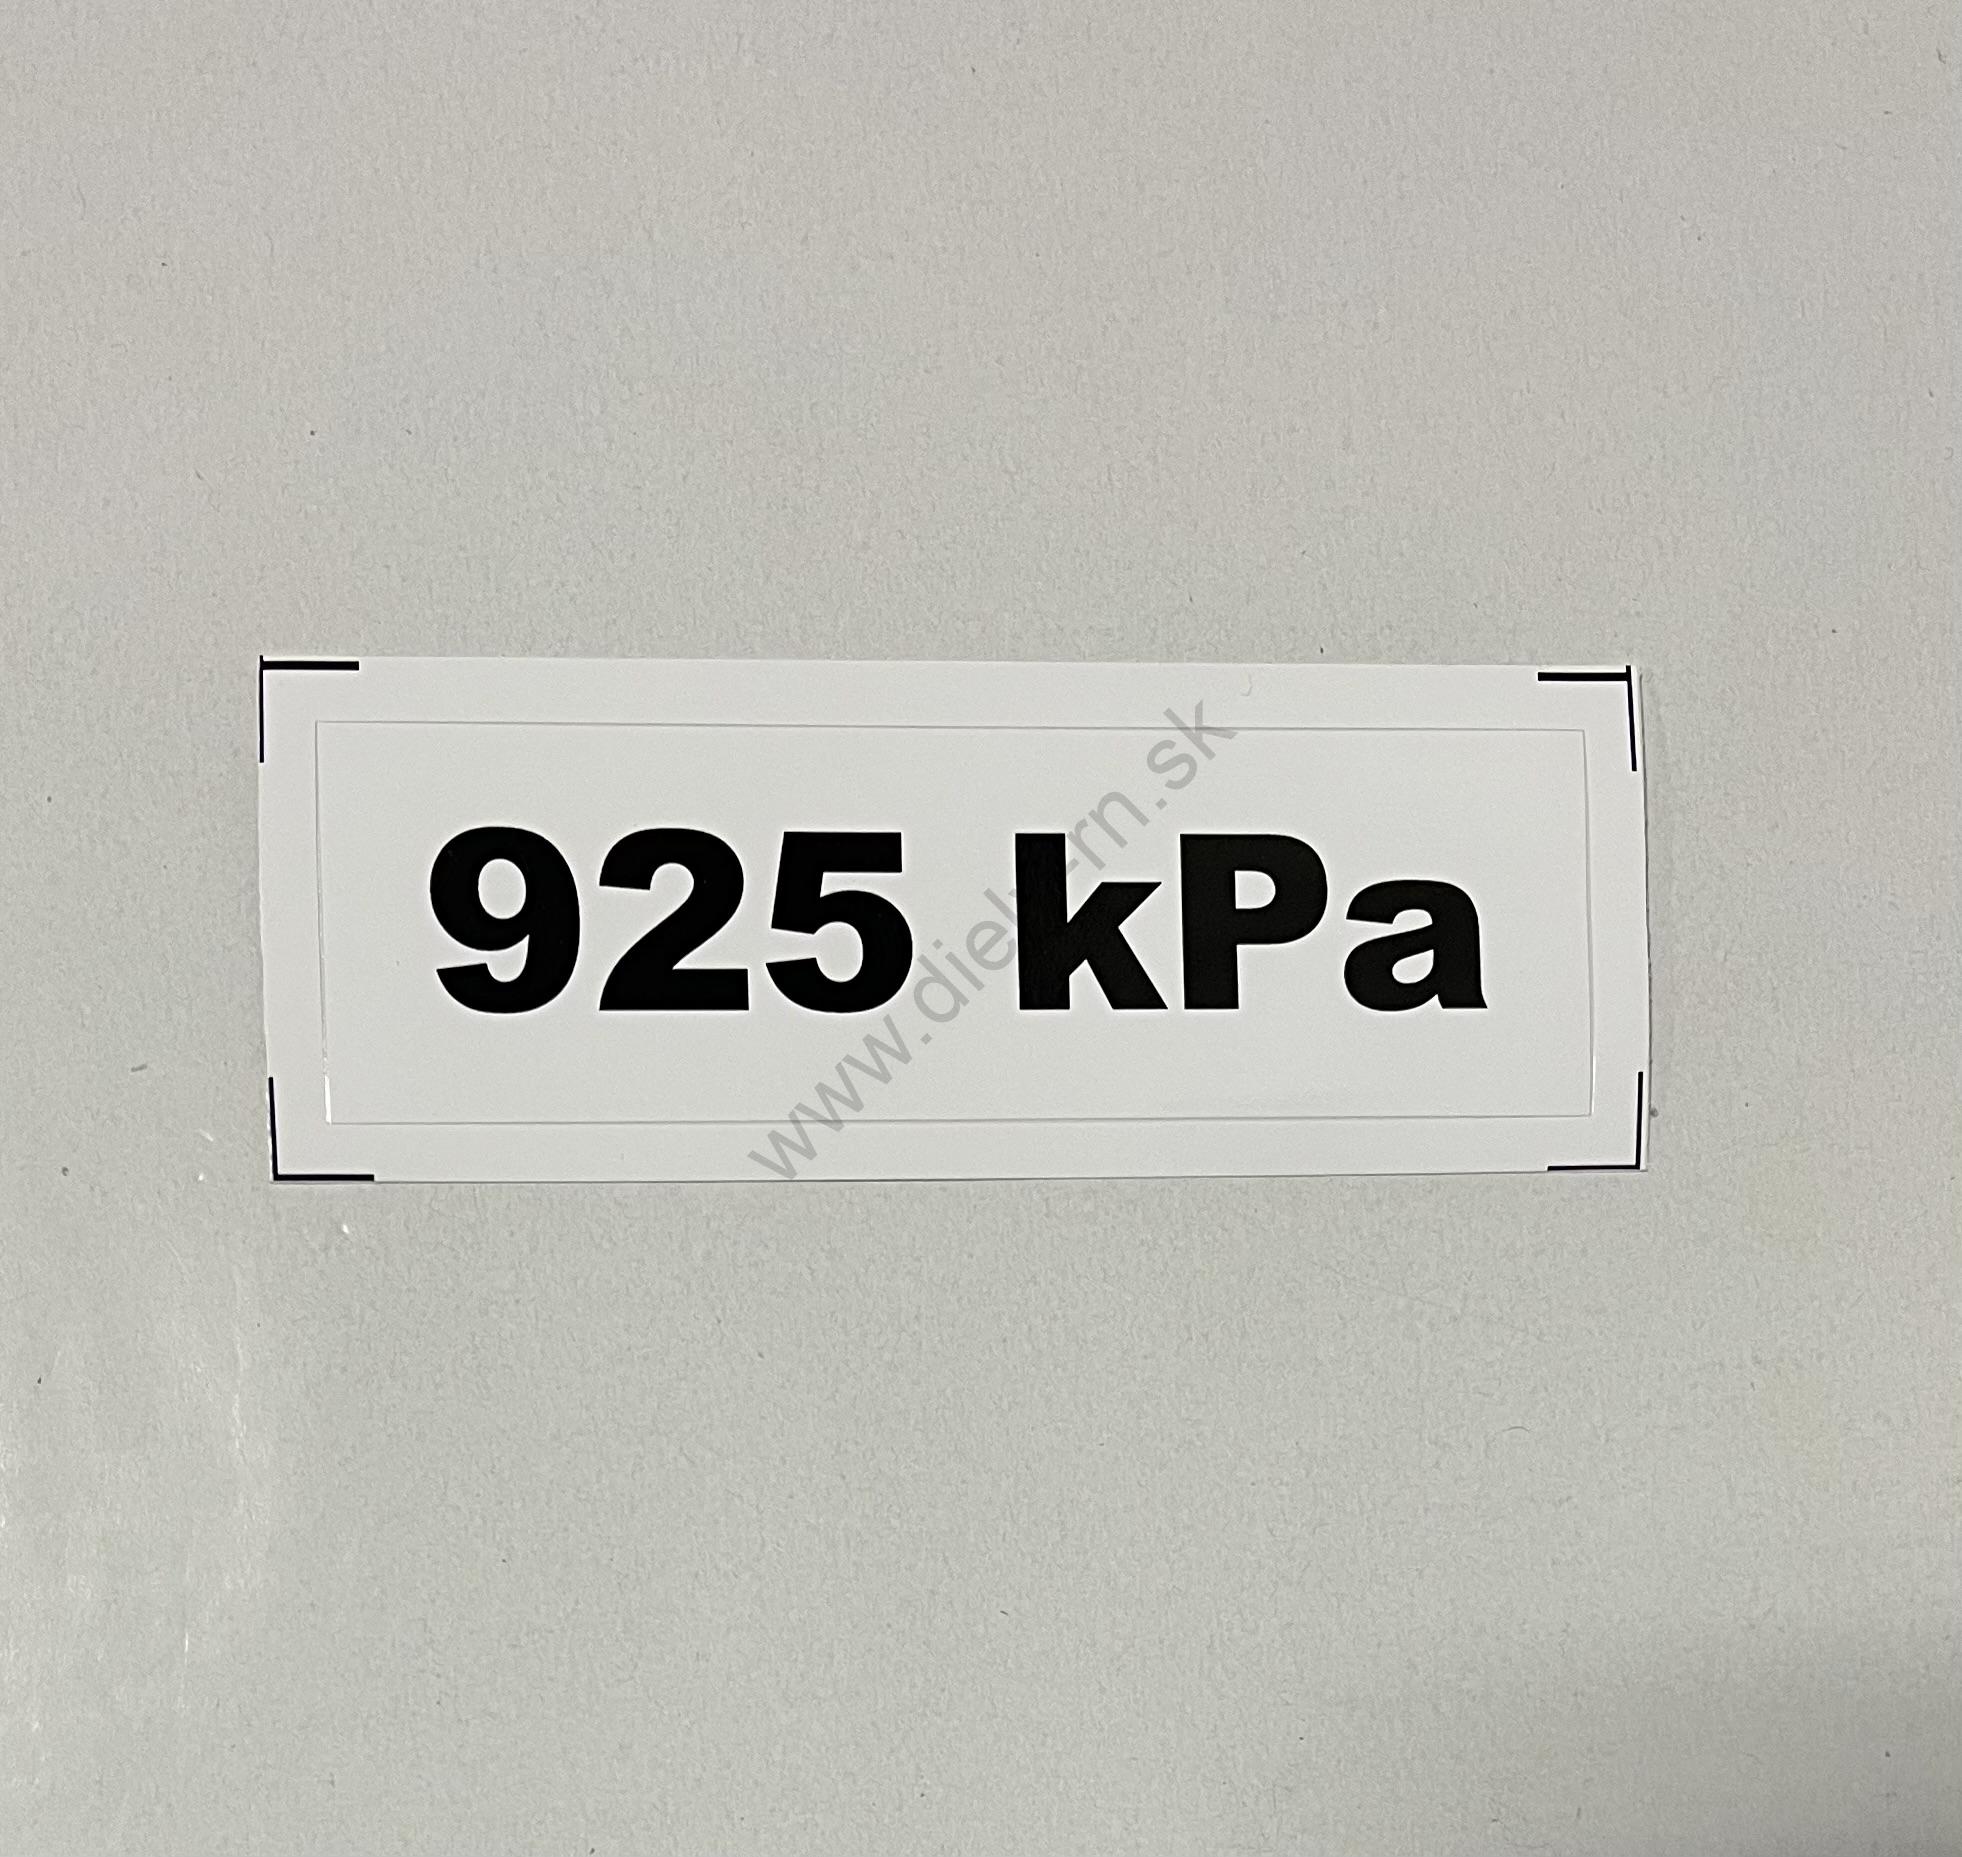 Označenie kPa 925